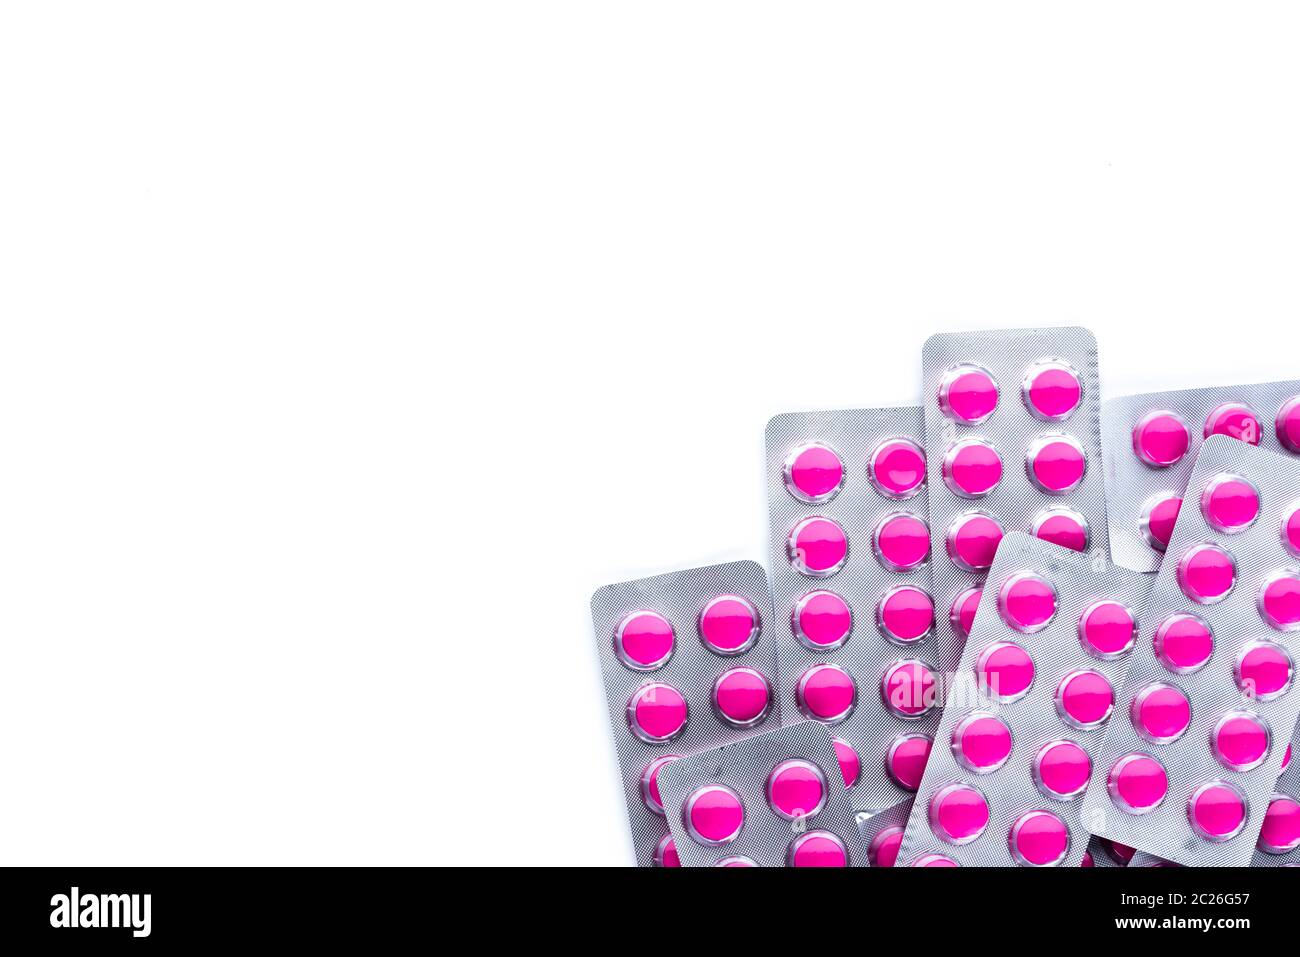 Runde rosa Pillen Tabletten in Blisterpackungen auf weißem Hintergrund mit  kopieren. Ibuprofen tabletten Pillen für Entlastung Schmerzen, hohem  Fieber, Kopfschmerzen, toothach Stockfotografie - Alamy